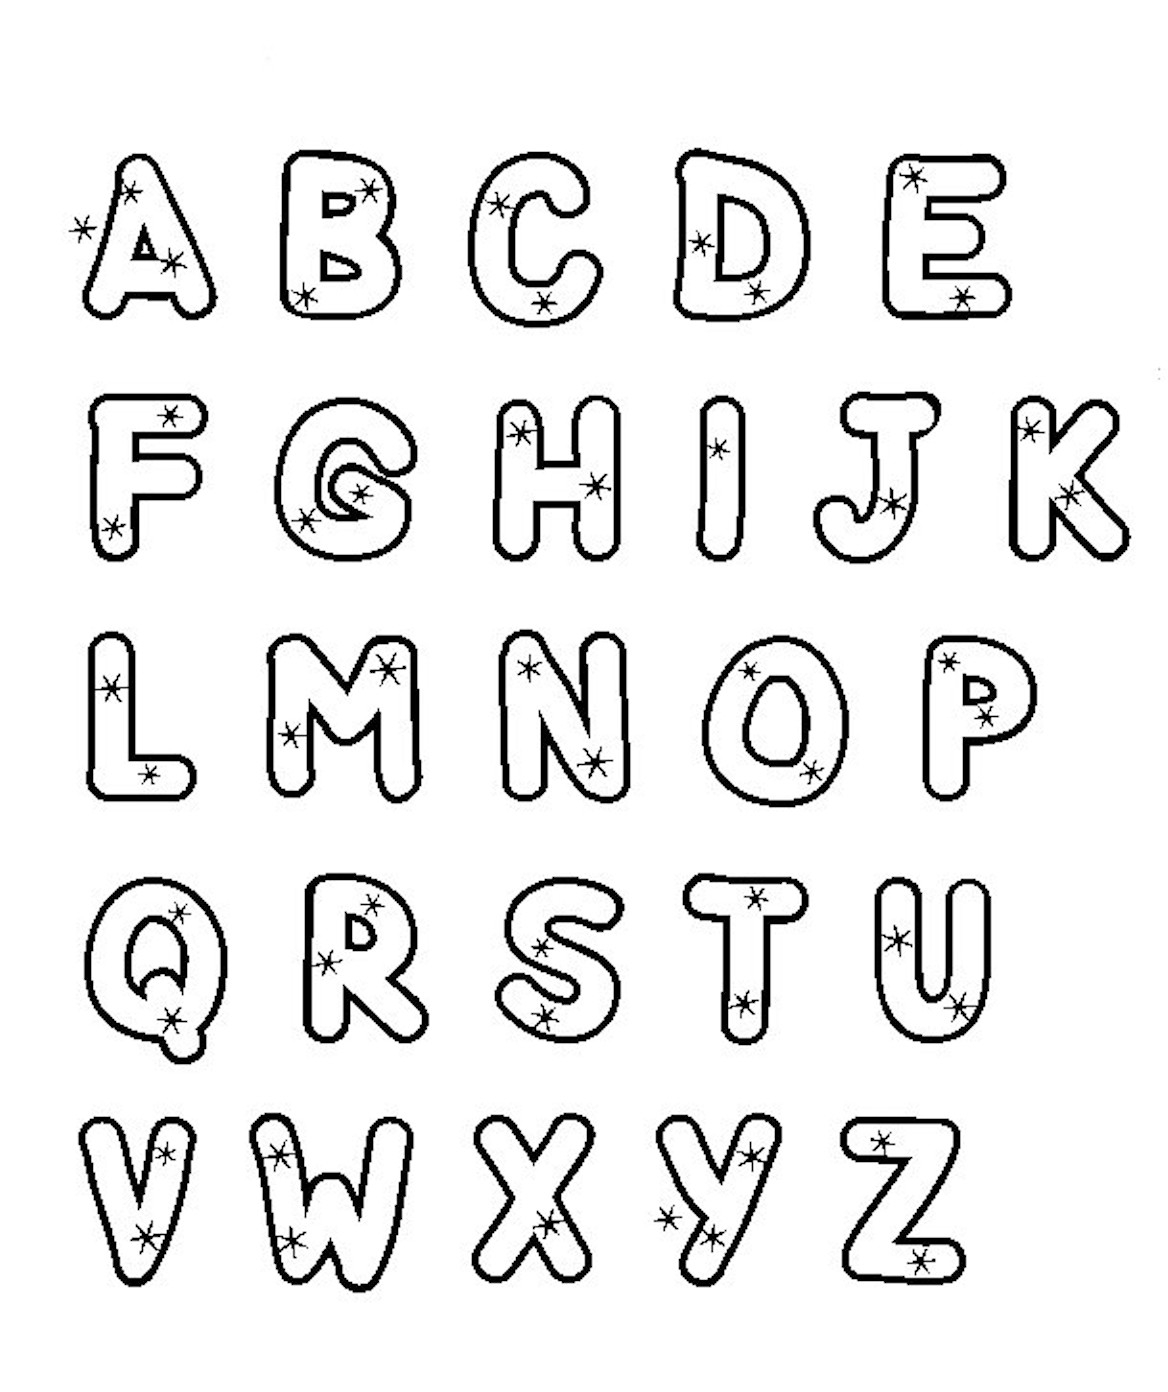 Азбука-раскраска Английский алфавит ГеоДом